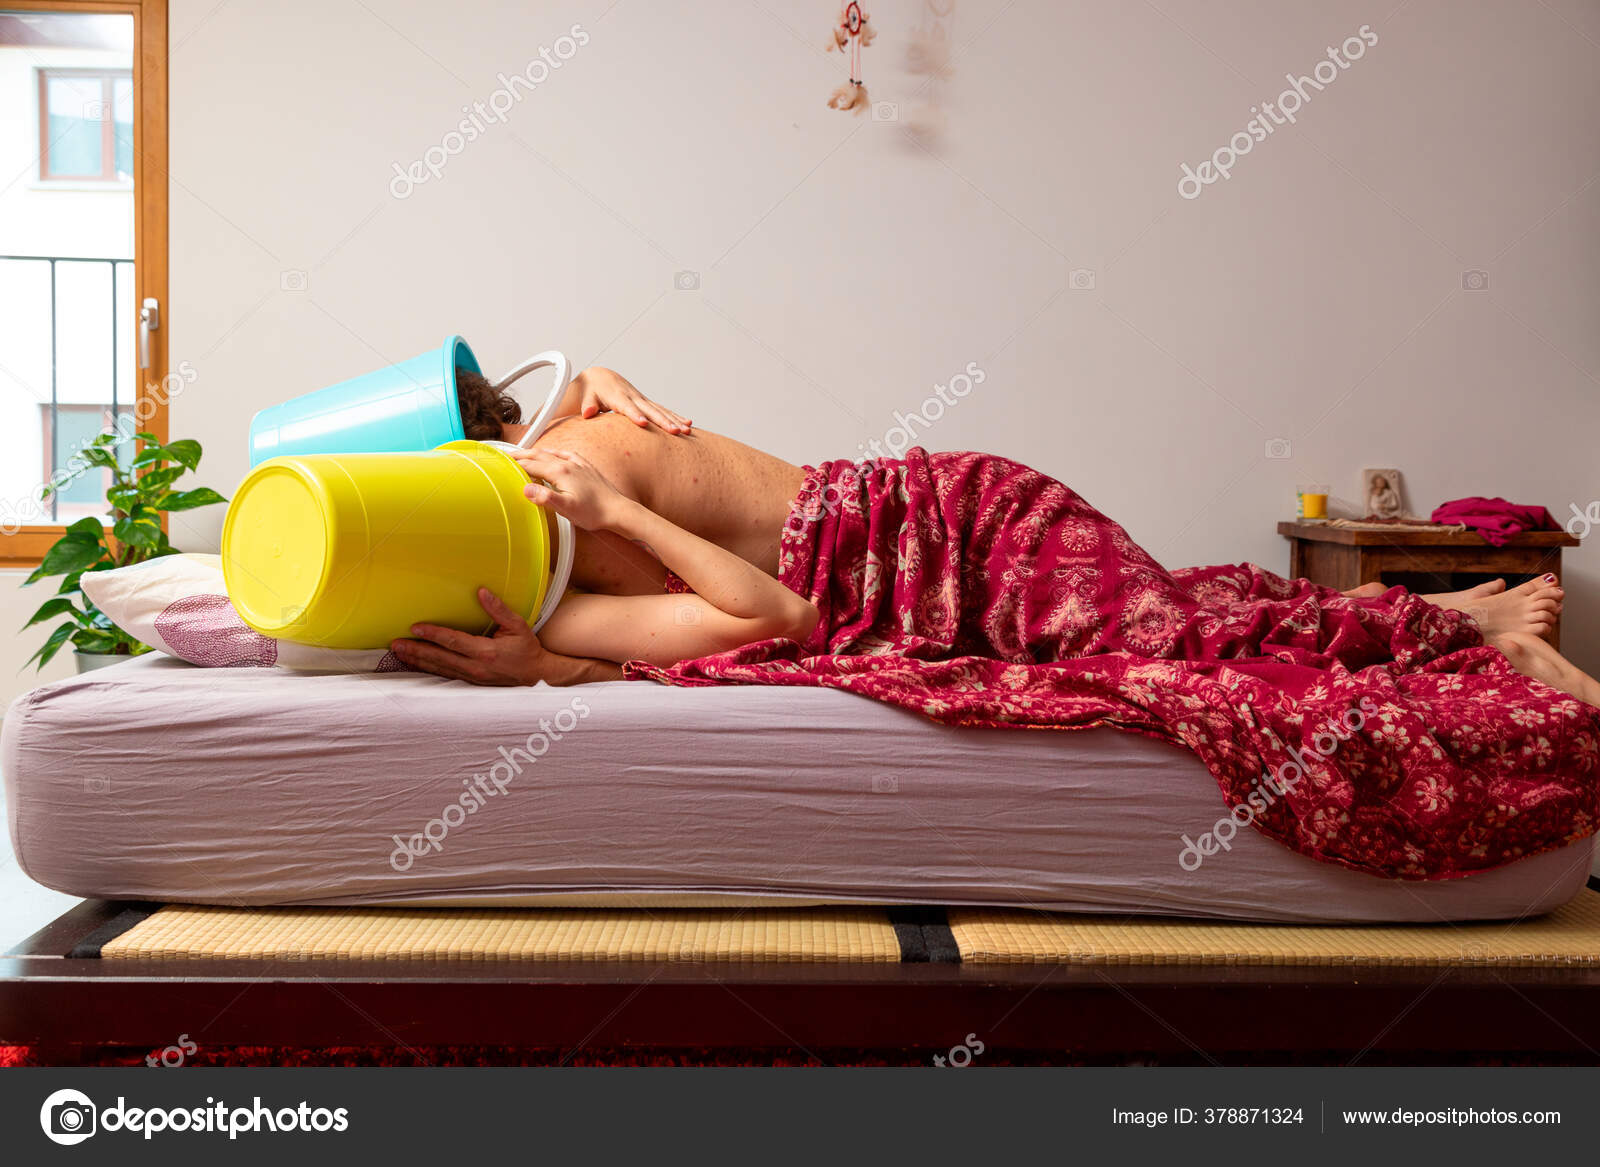 Junges Paar Bett Mit Einem Eimer Auf Dem Kopf Sie Stockfotografie Lizenzfreie Fotos C Zveiger 378871324 Depositphotos